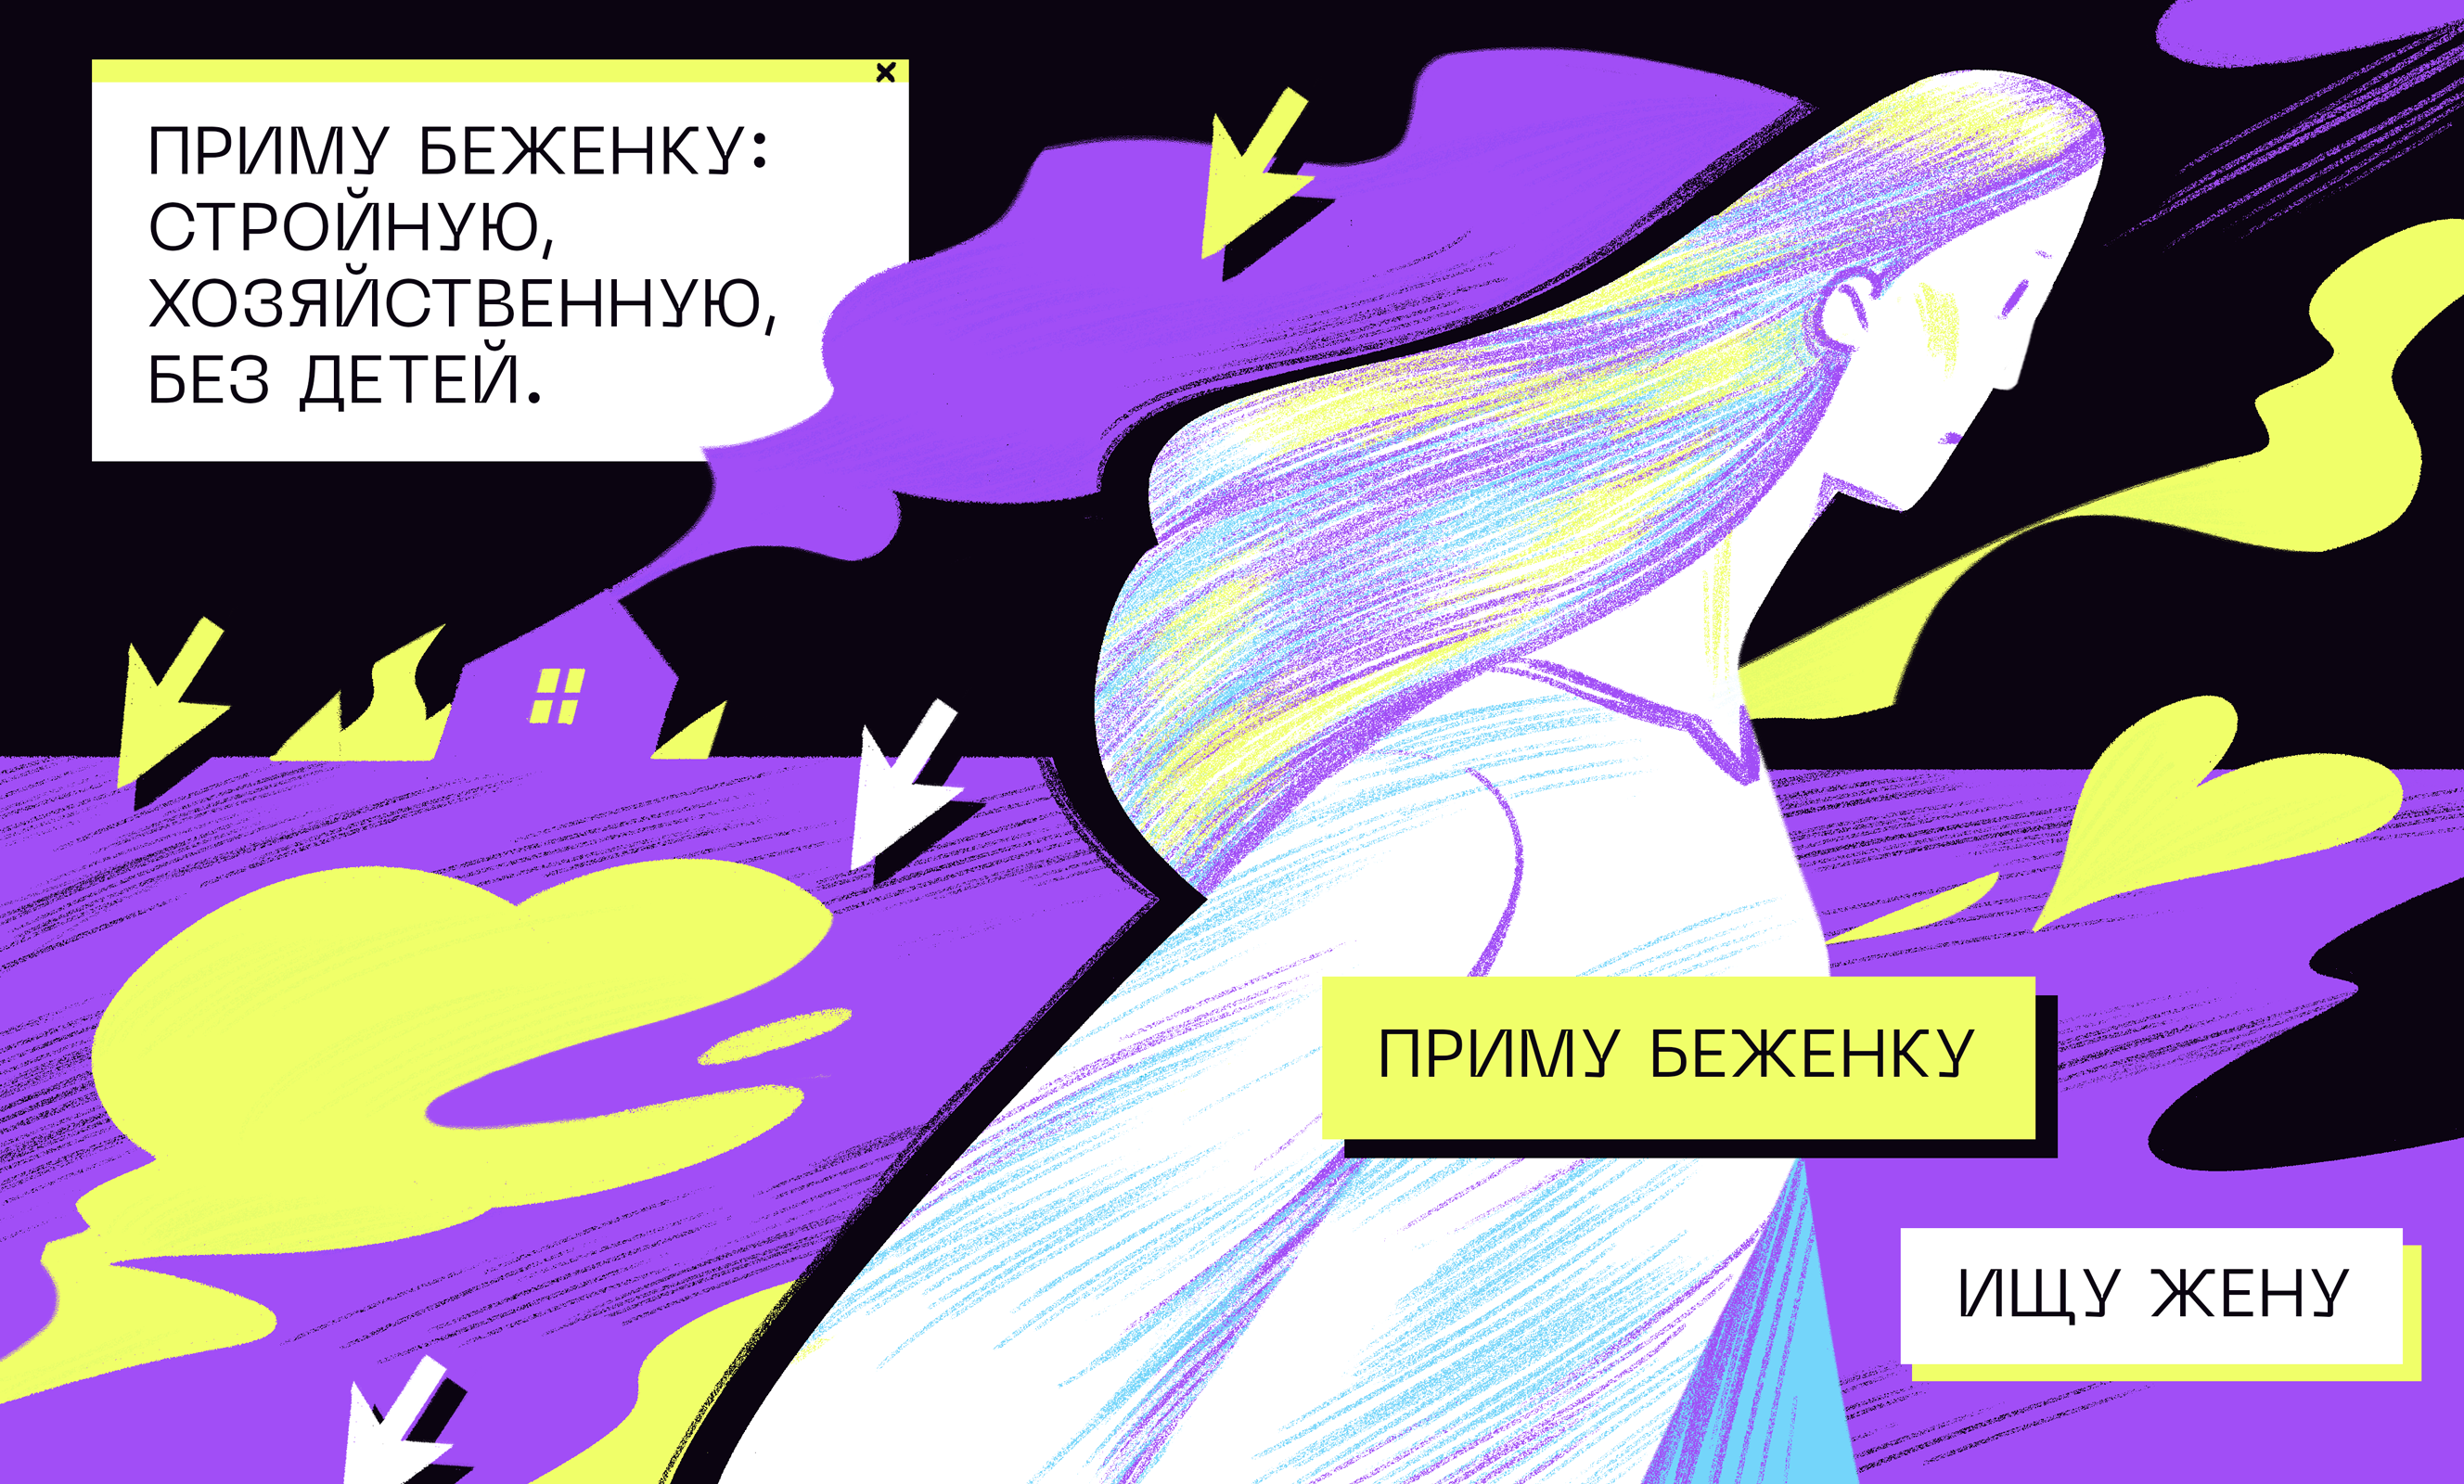 Парень ищет девушку в Киев - объявление № от - анонимные знакомства